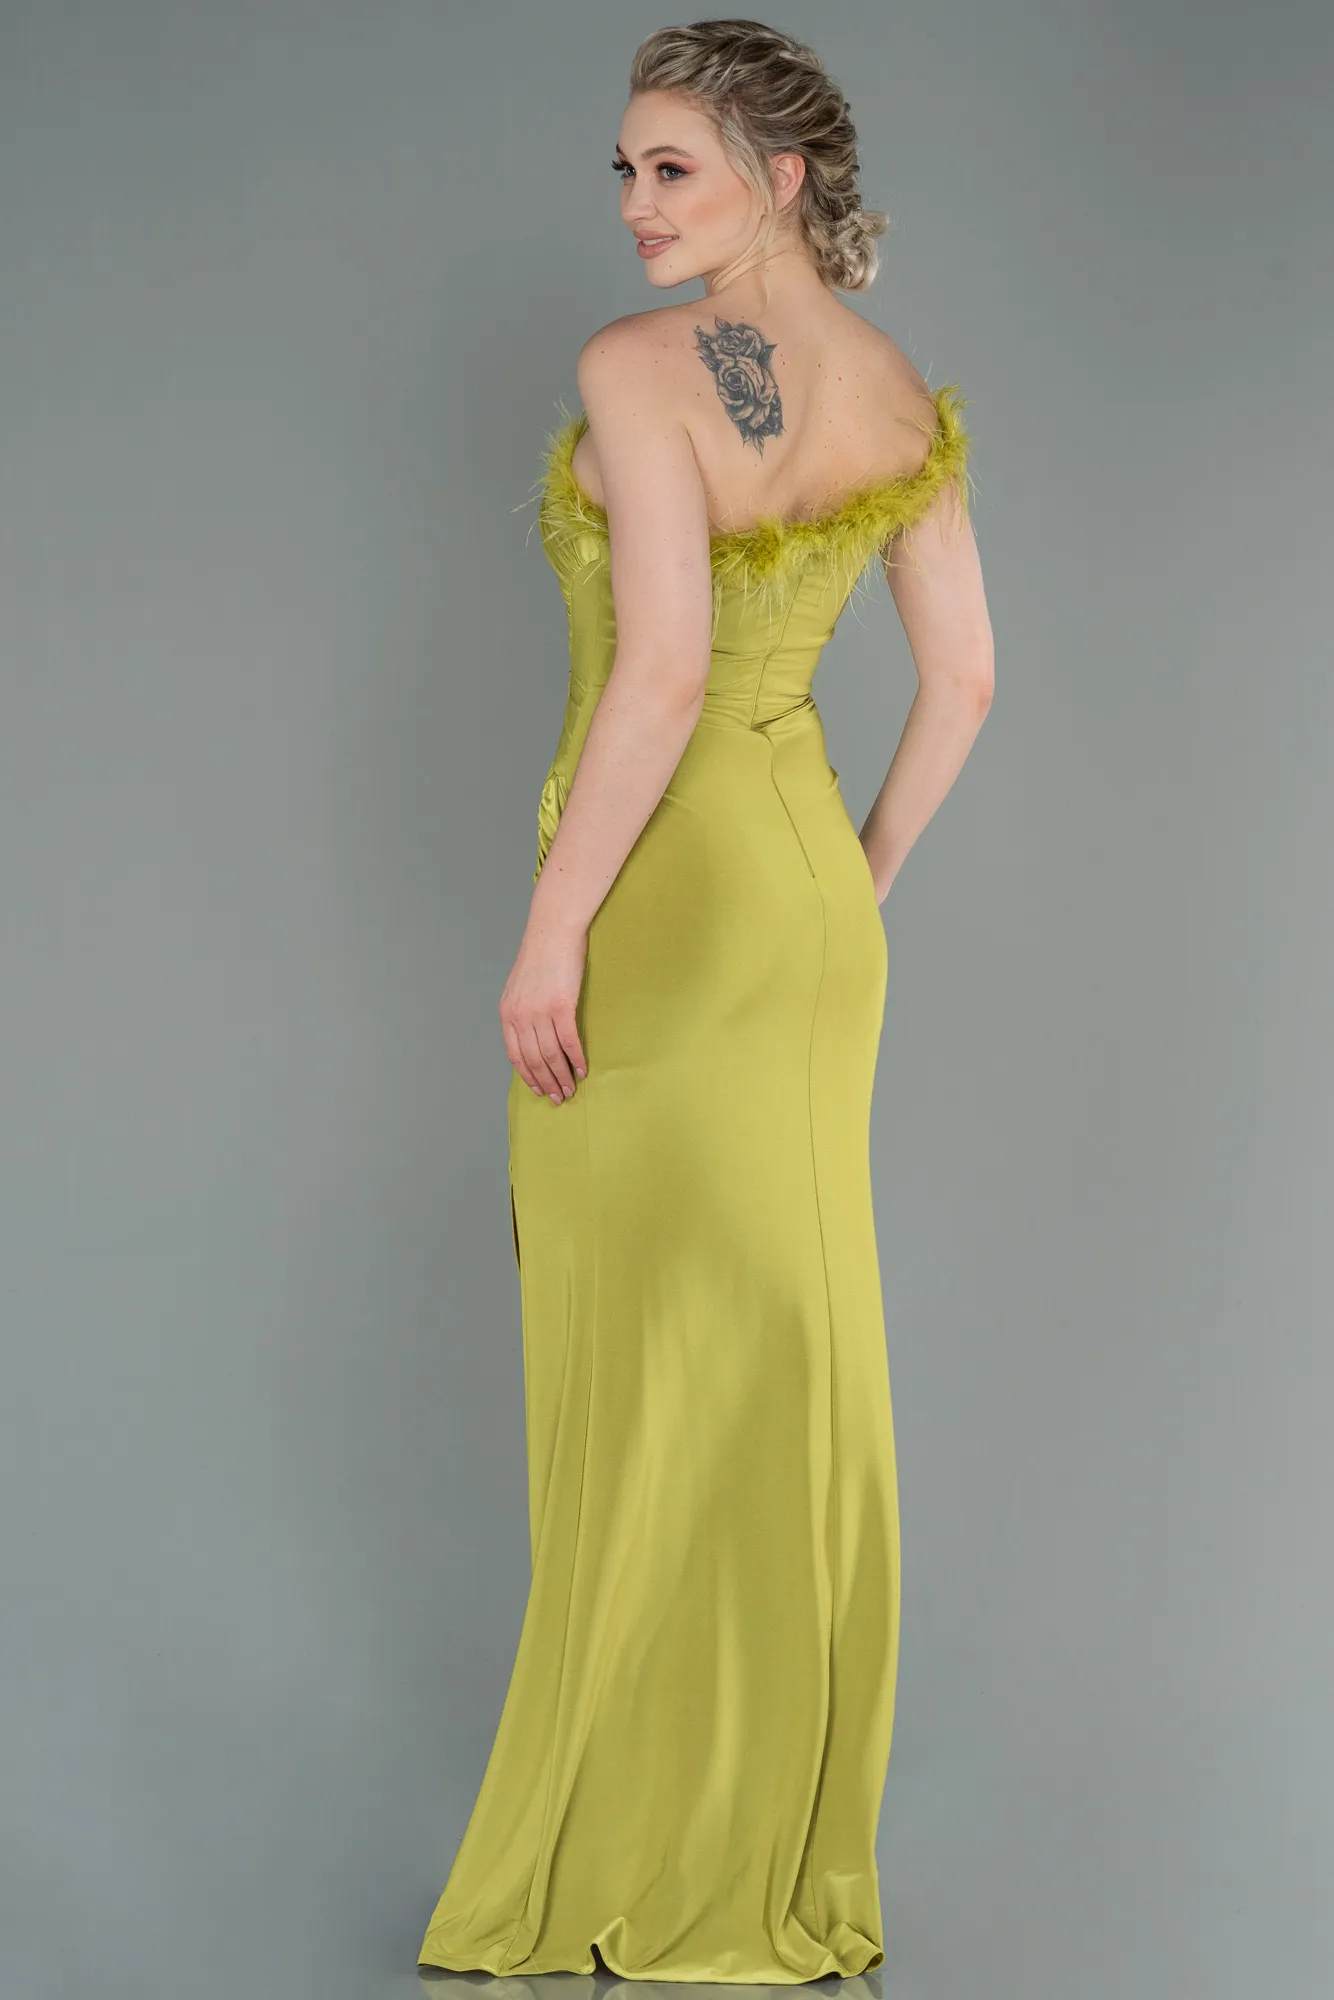 Pistachio Green-Long Mermaid Evening Dress ABU3048